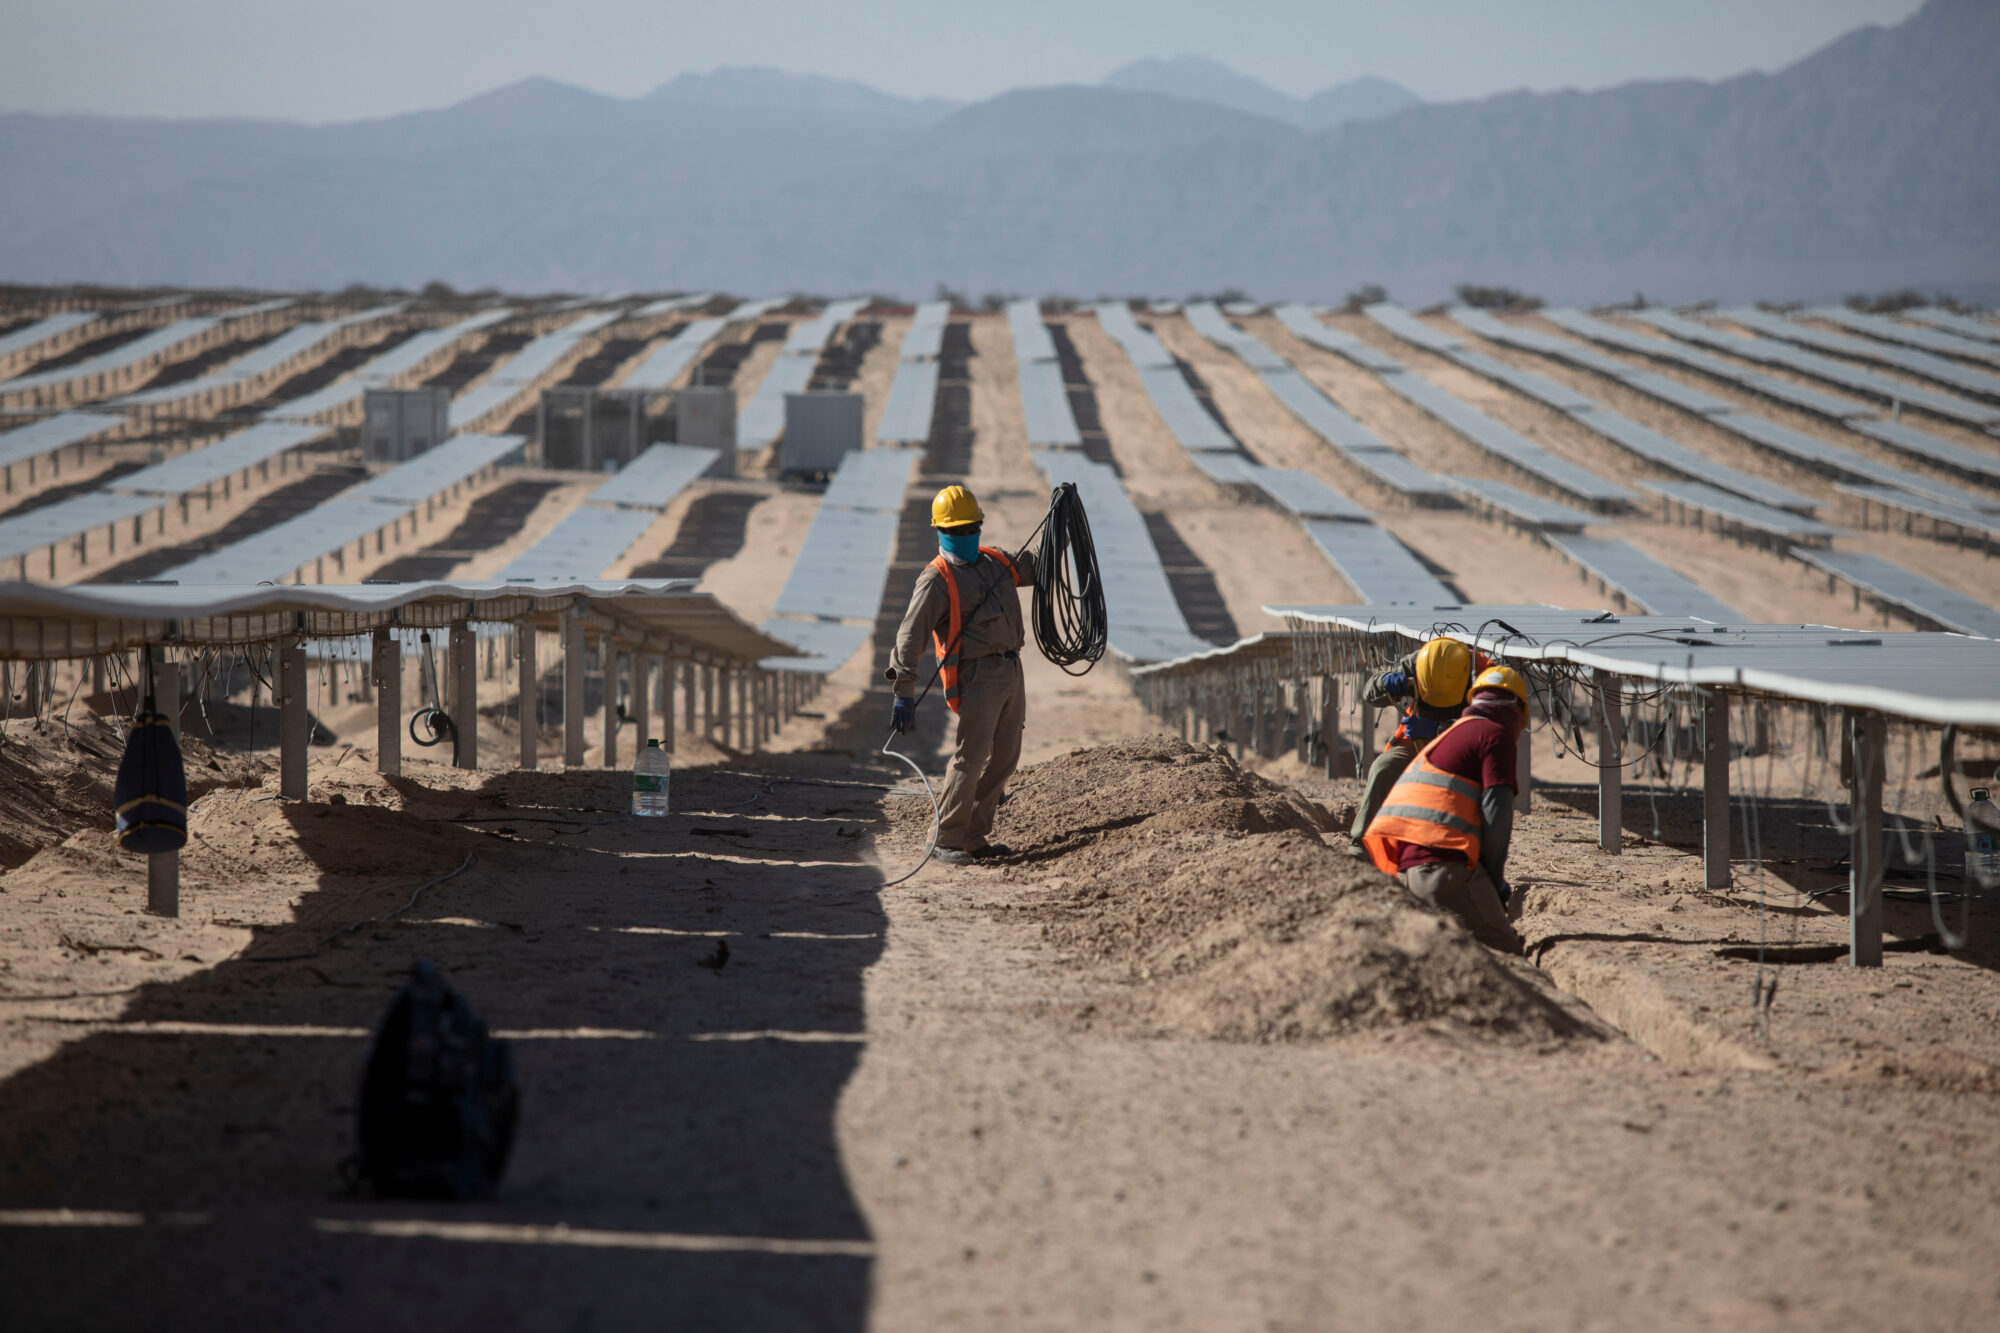 <p>Trabalhadores instalam painéis solares em uma fábrica argentina construída pela PowerChina. A recente entrada do país sul-americano na Iniciativa Cinturão e Rota pode atrair mais investimentos chineses em projetos de energia renovável (Imagem: Martin Zabala / Alamy)</p>